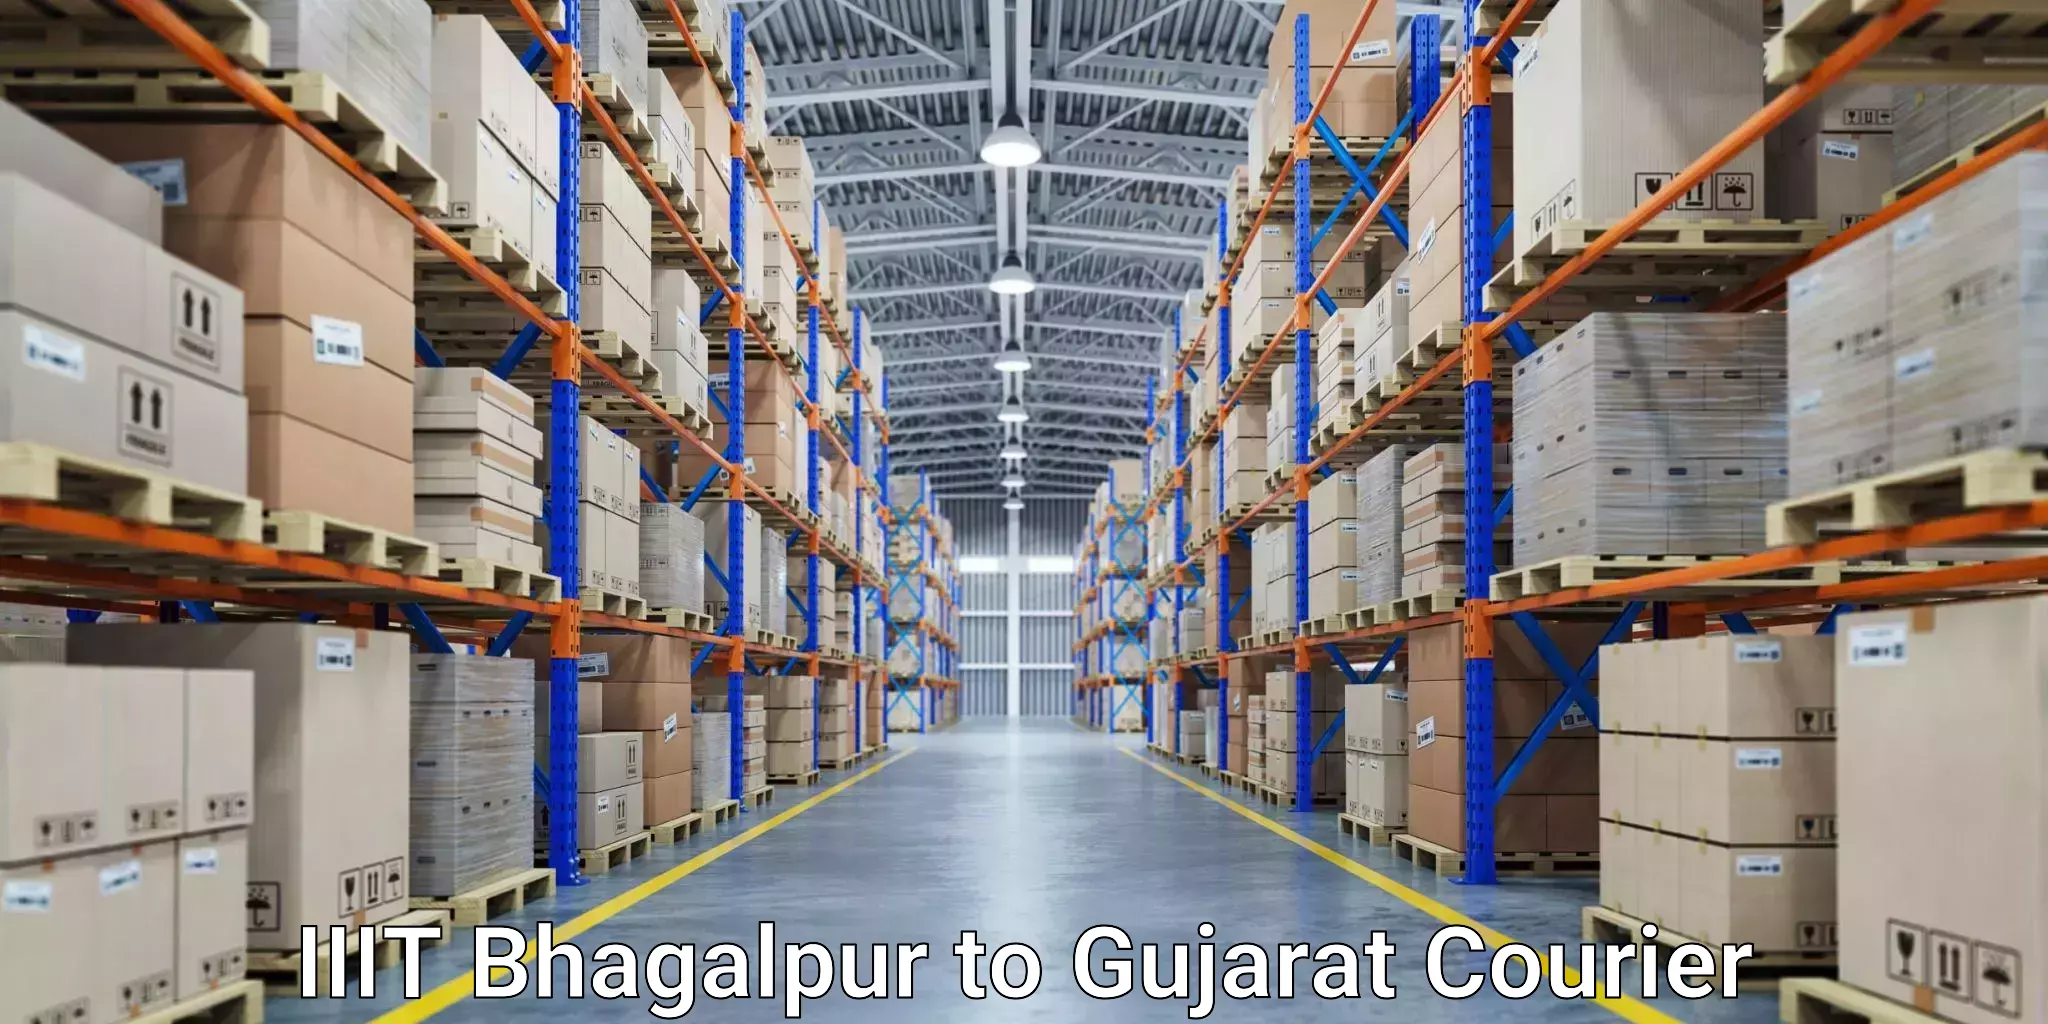 Specialized courier services IIIT Bhagalpur to Vatadara